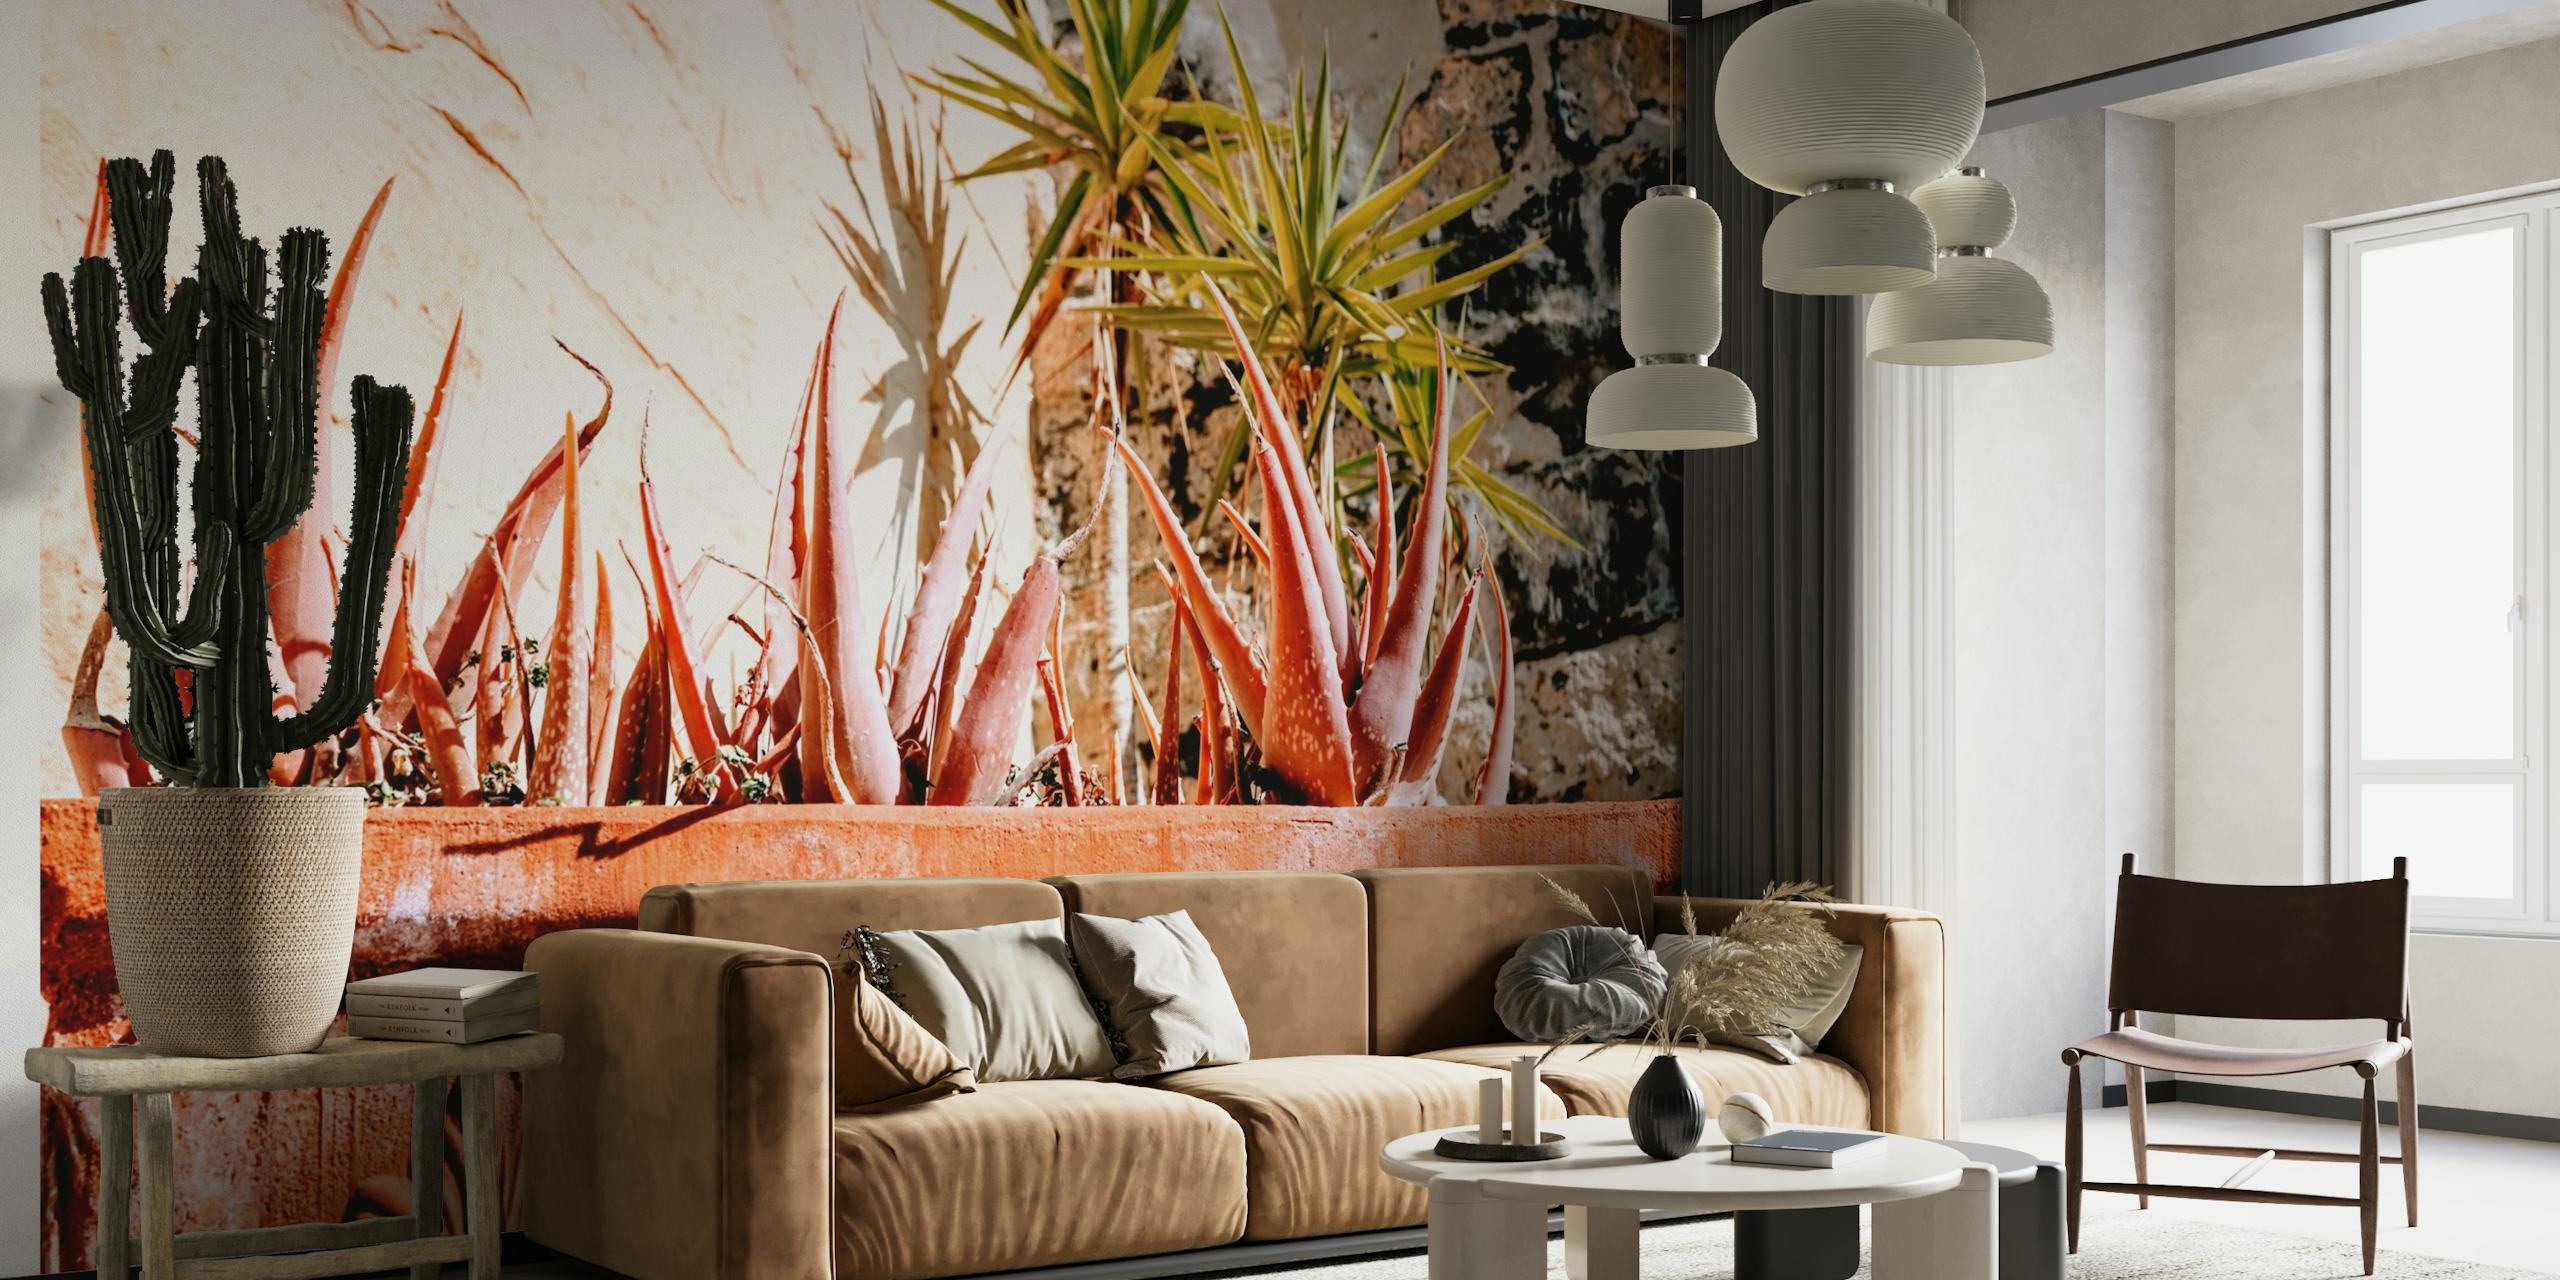 Succulent Gardens fotobehang met een verscheidenheid aan woestijnplanten